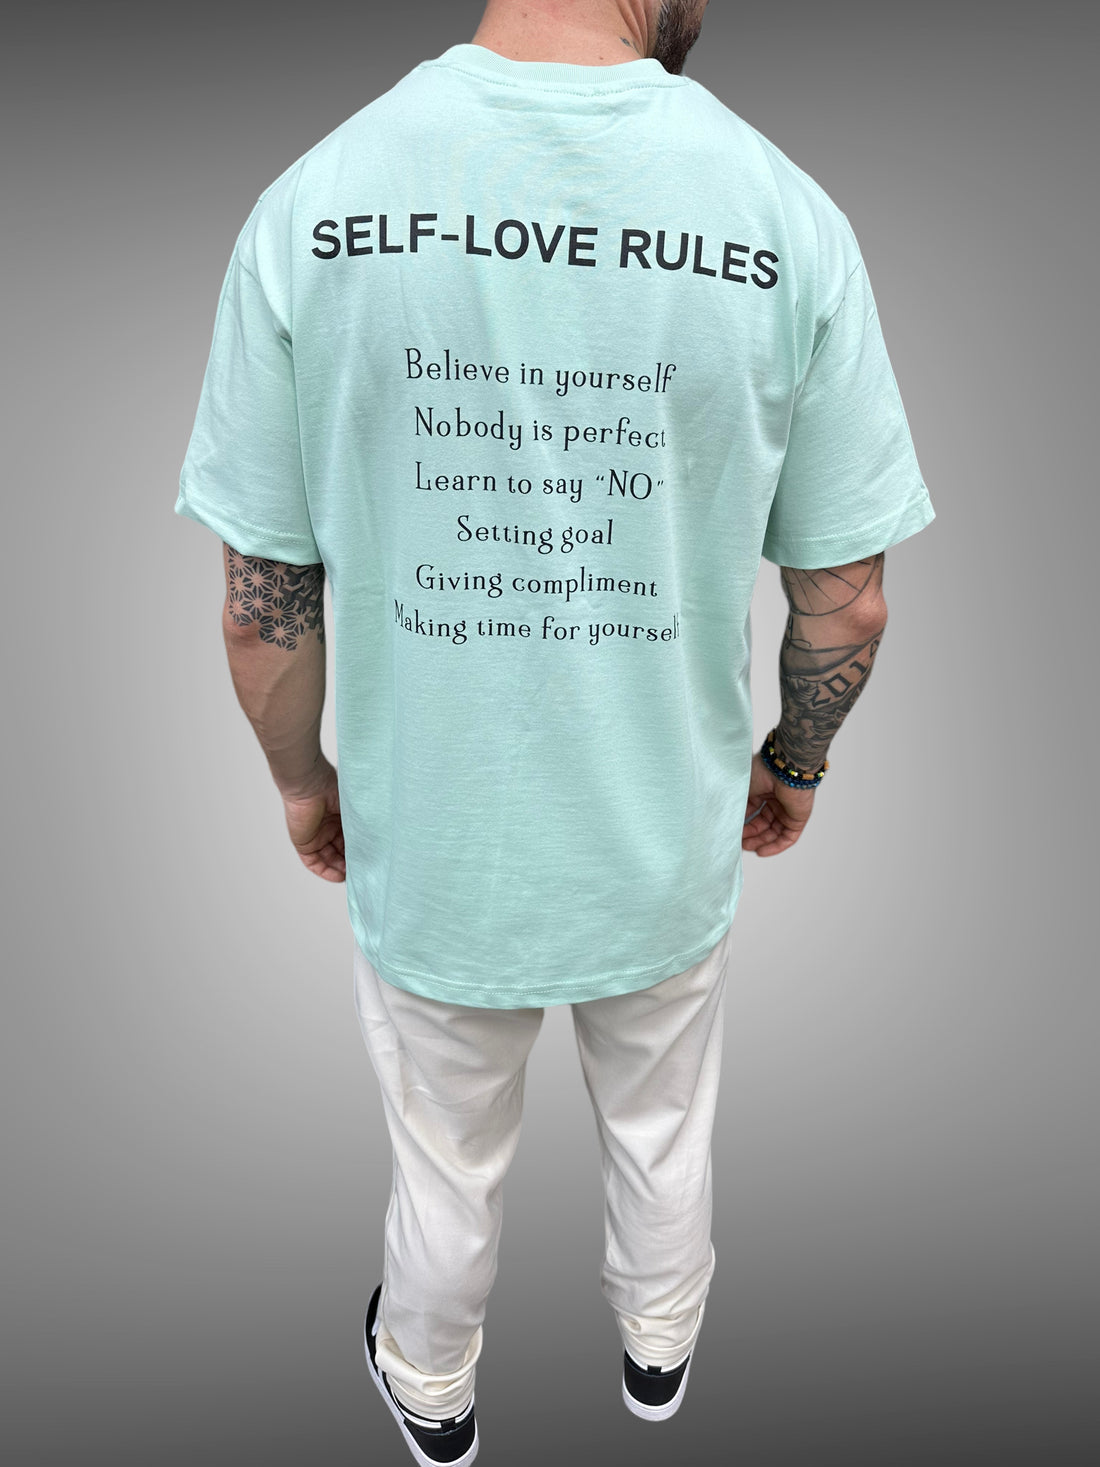 ADJ - T-shirt mint self rules - Stayin